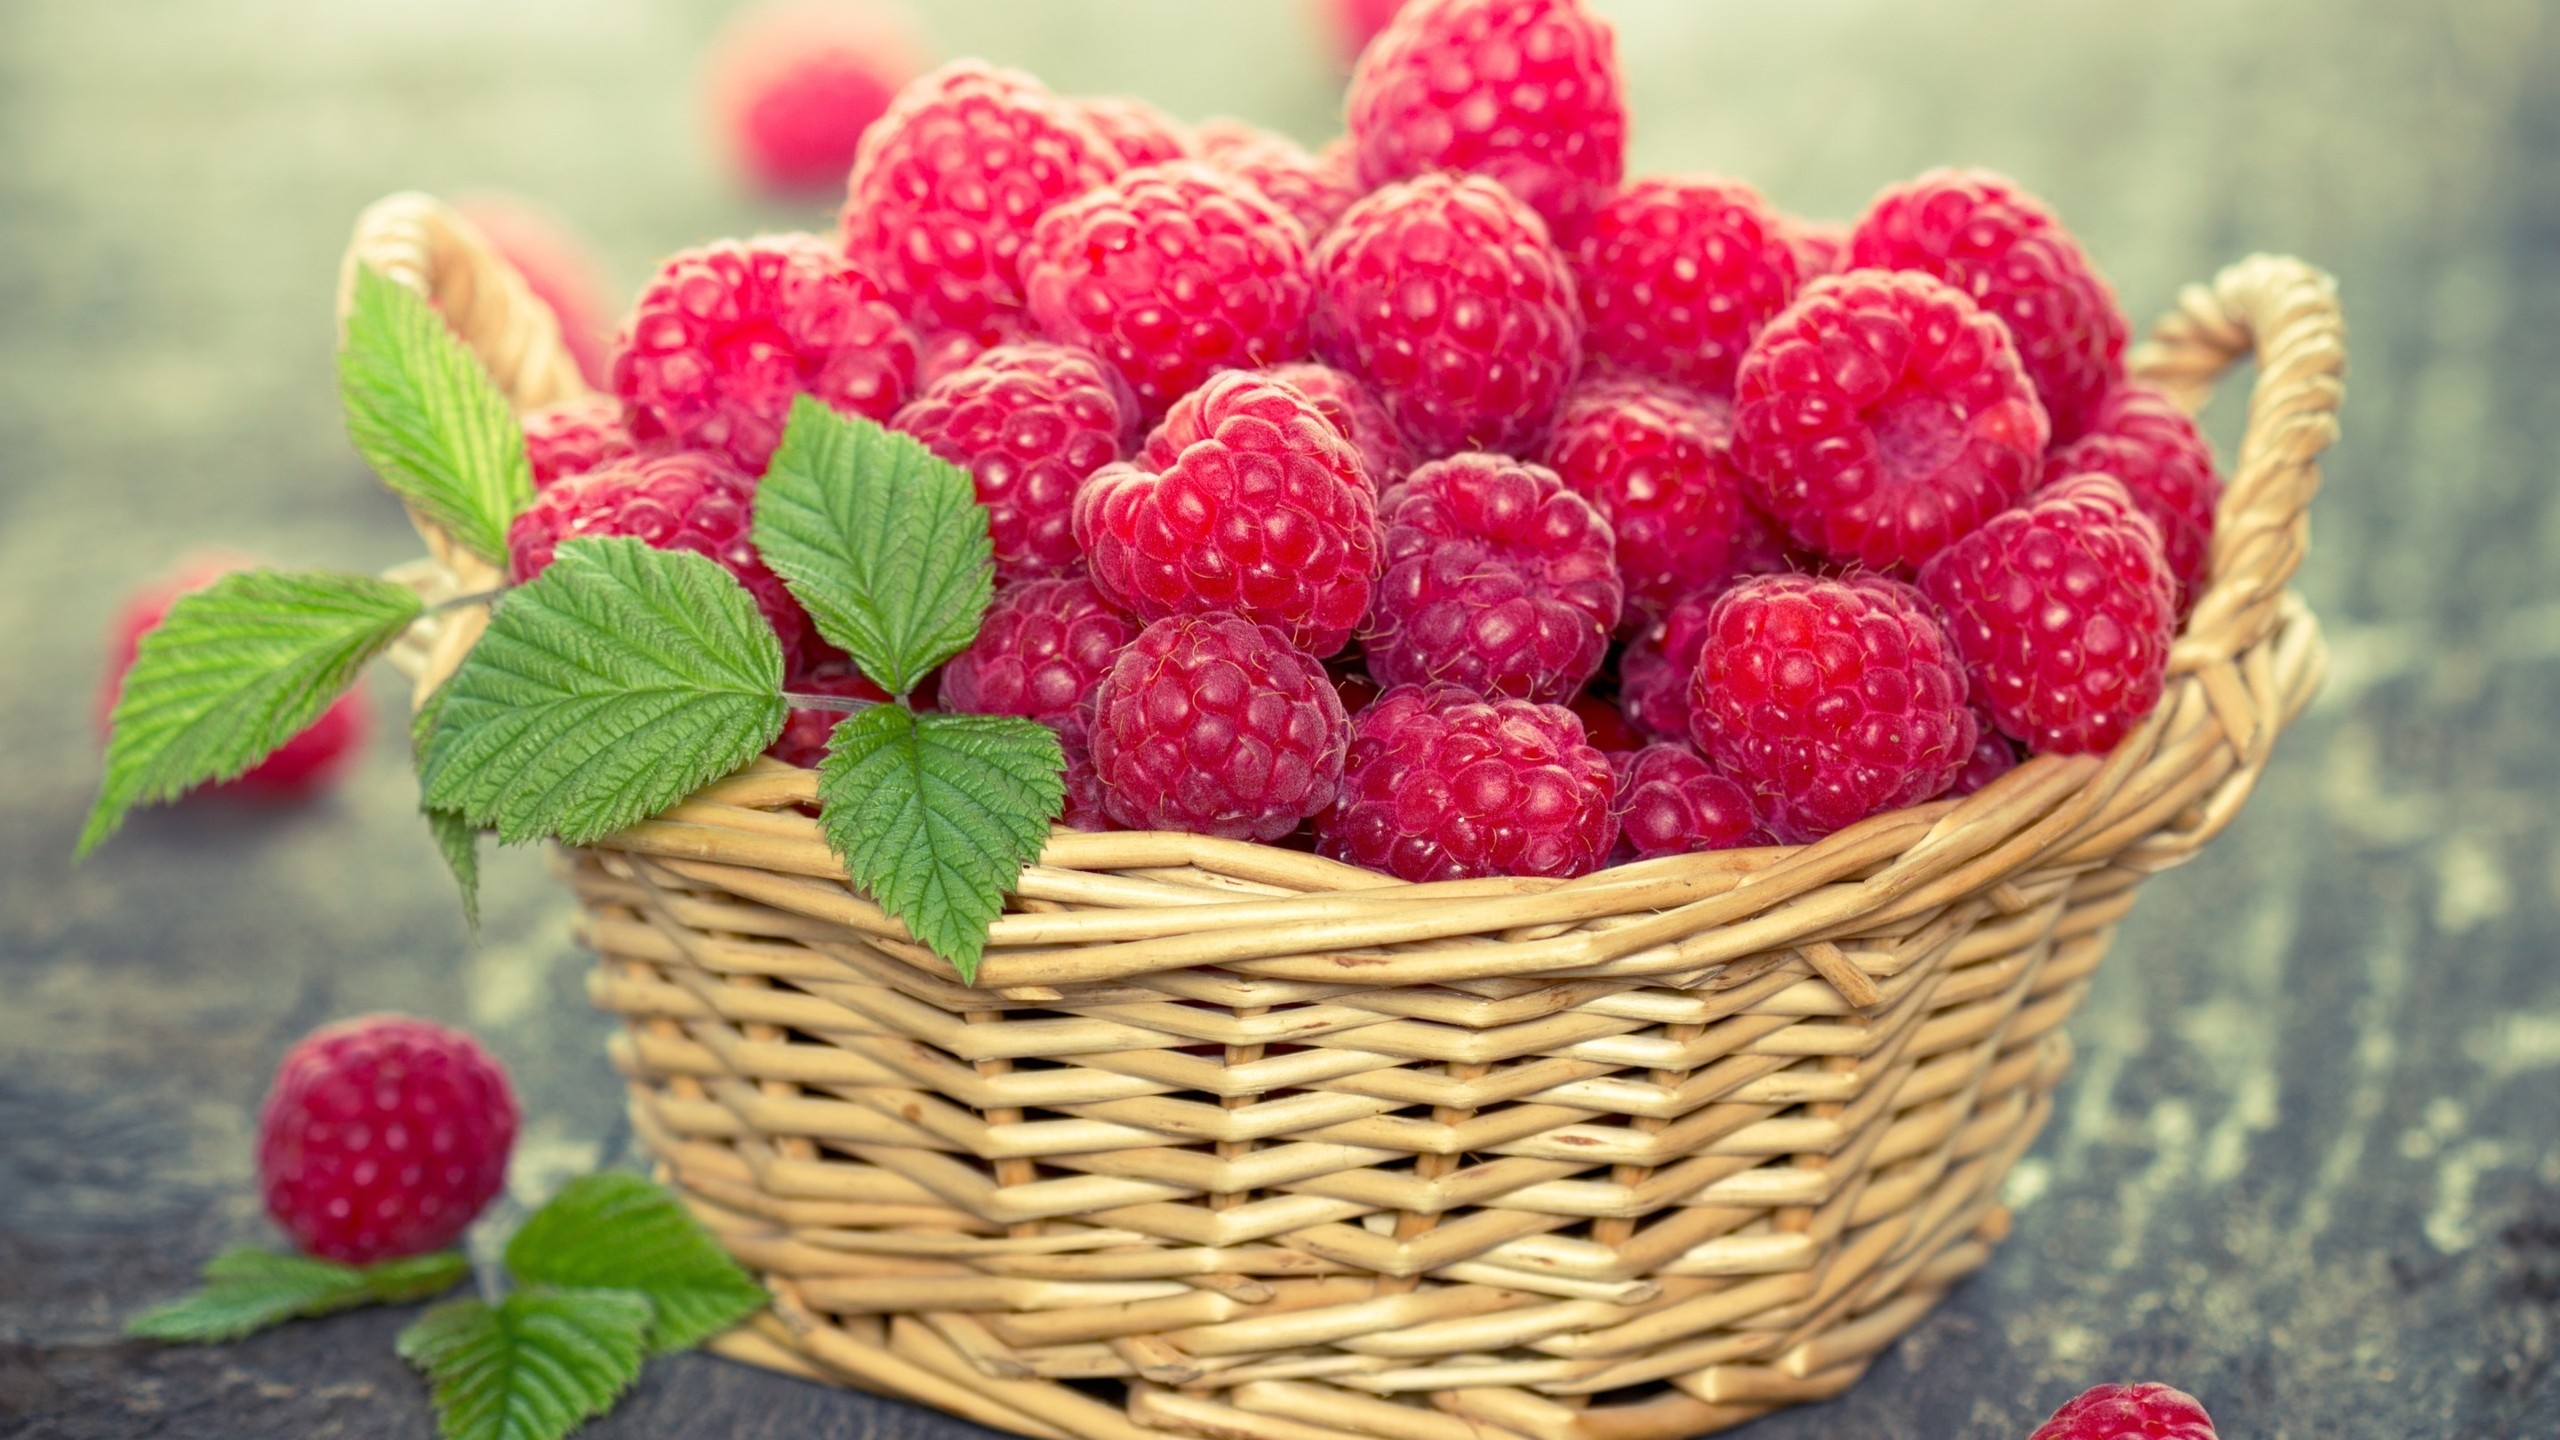 Basket of Raspberries for 2560x1440 HDTV resolution